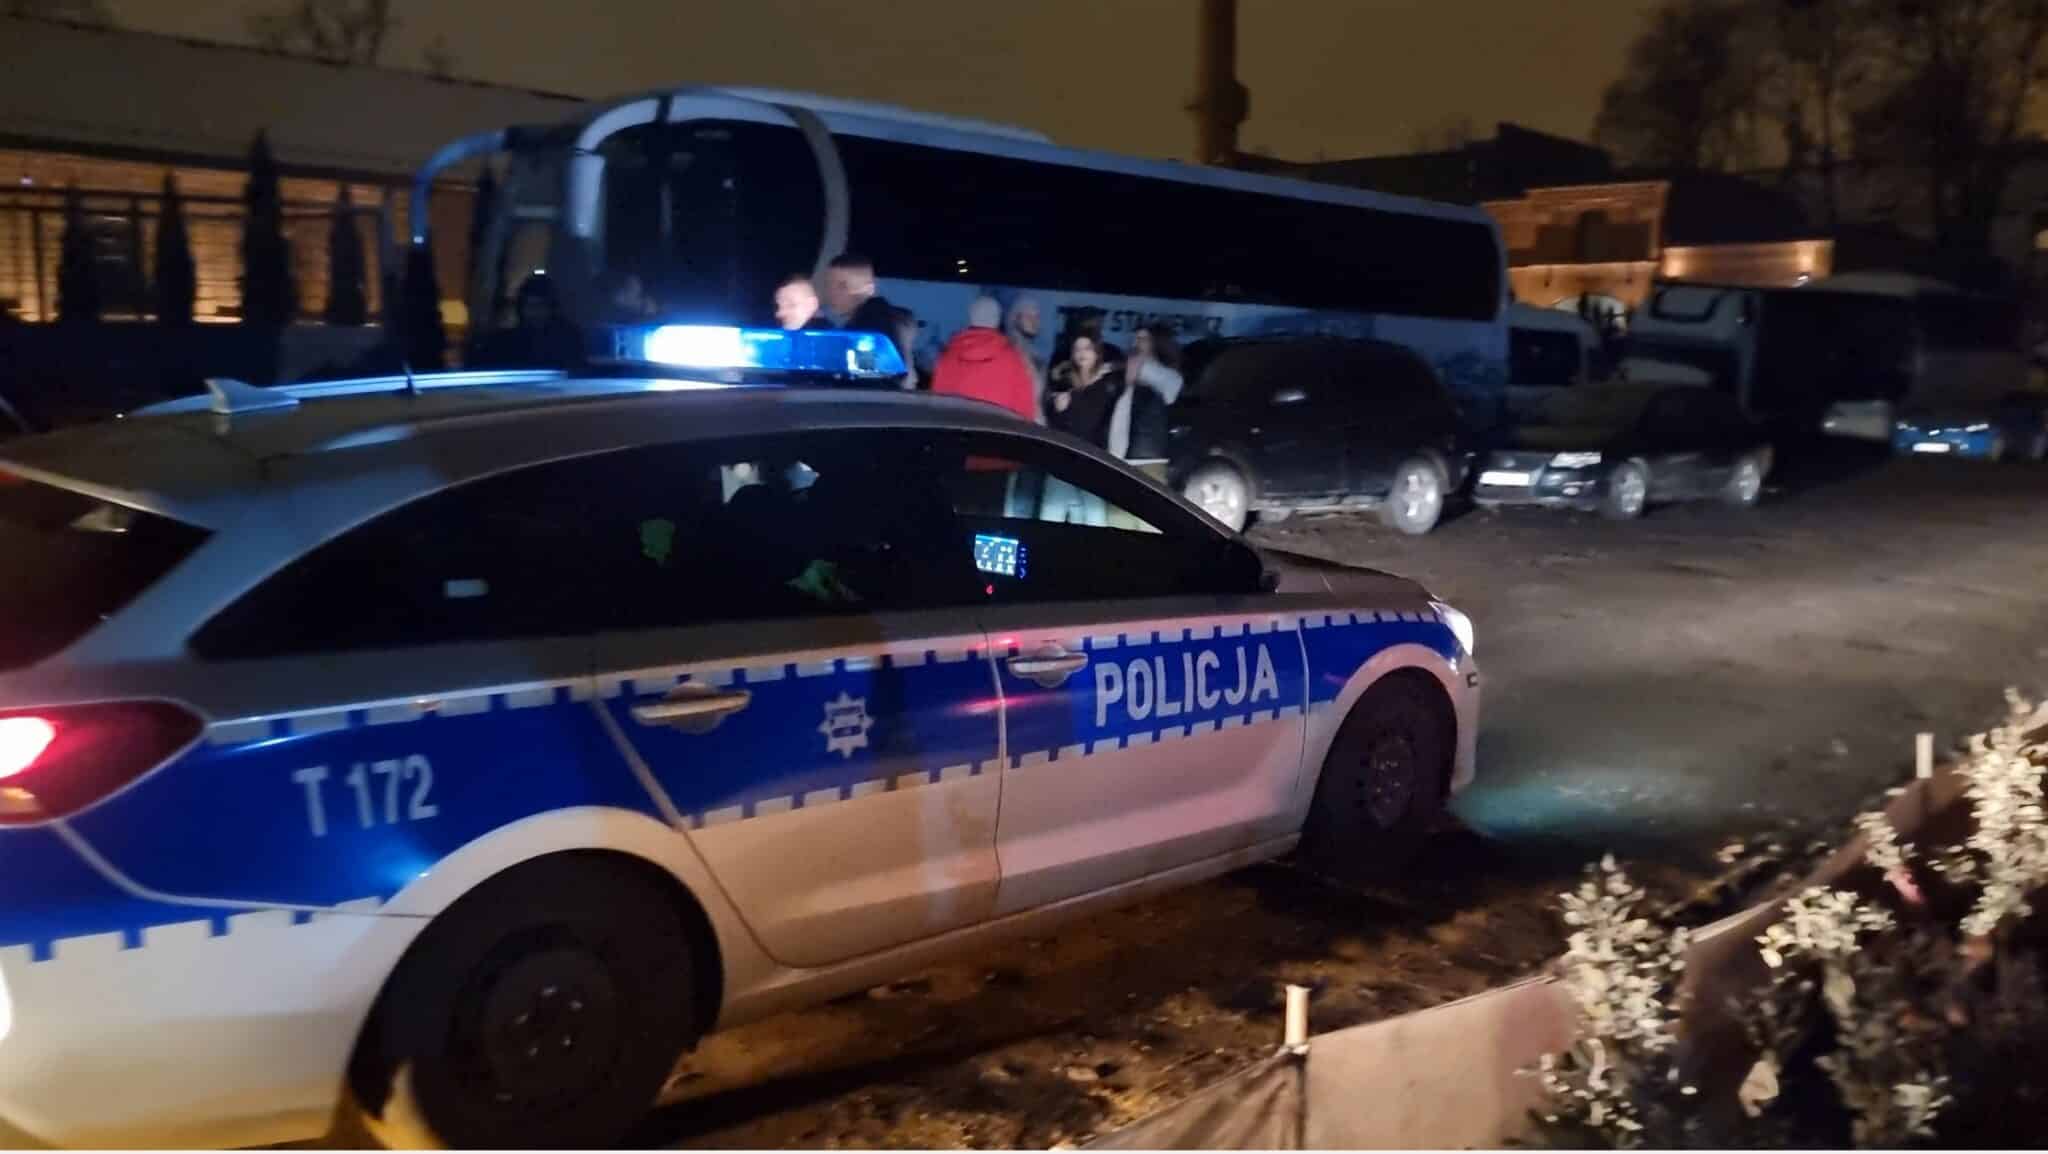 Policjanci nie mieli litości dla olsztyńskiej młodzieży. Ponad 60 wykroczeń po imprezie NJO i Melanż Company impreza Wiadomości, zShowcase